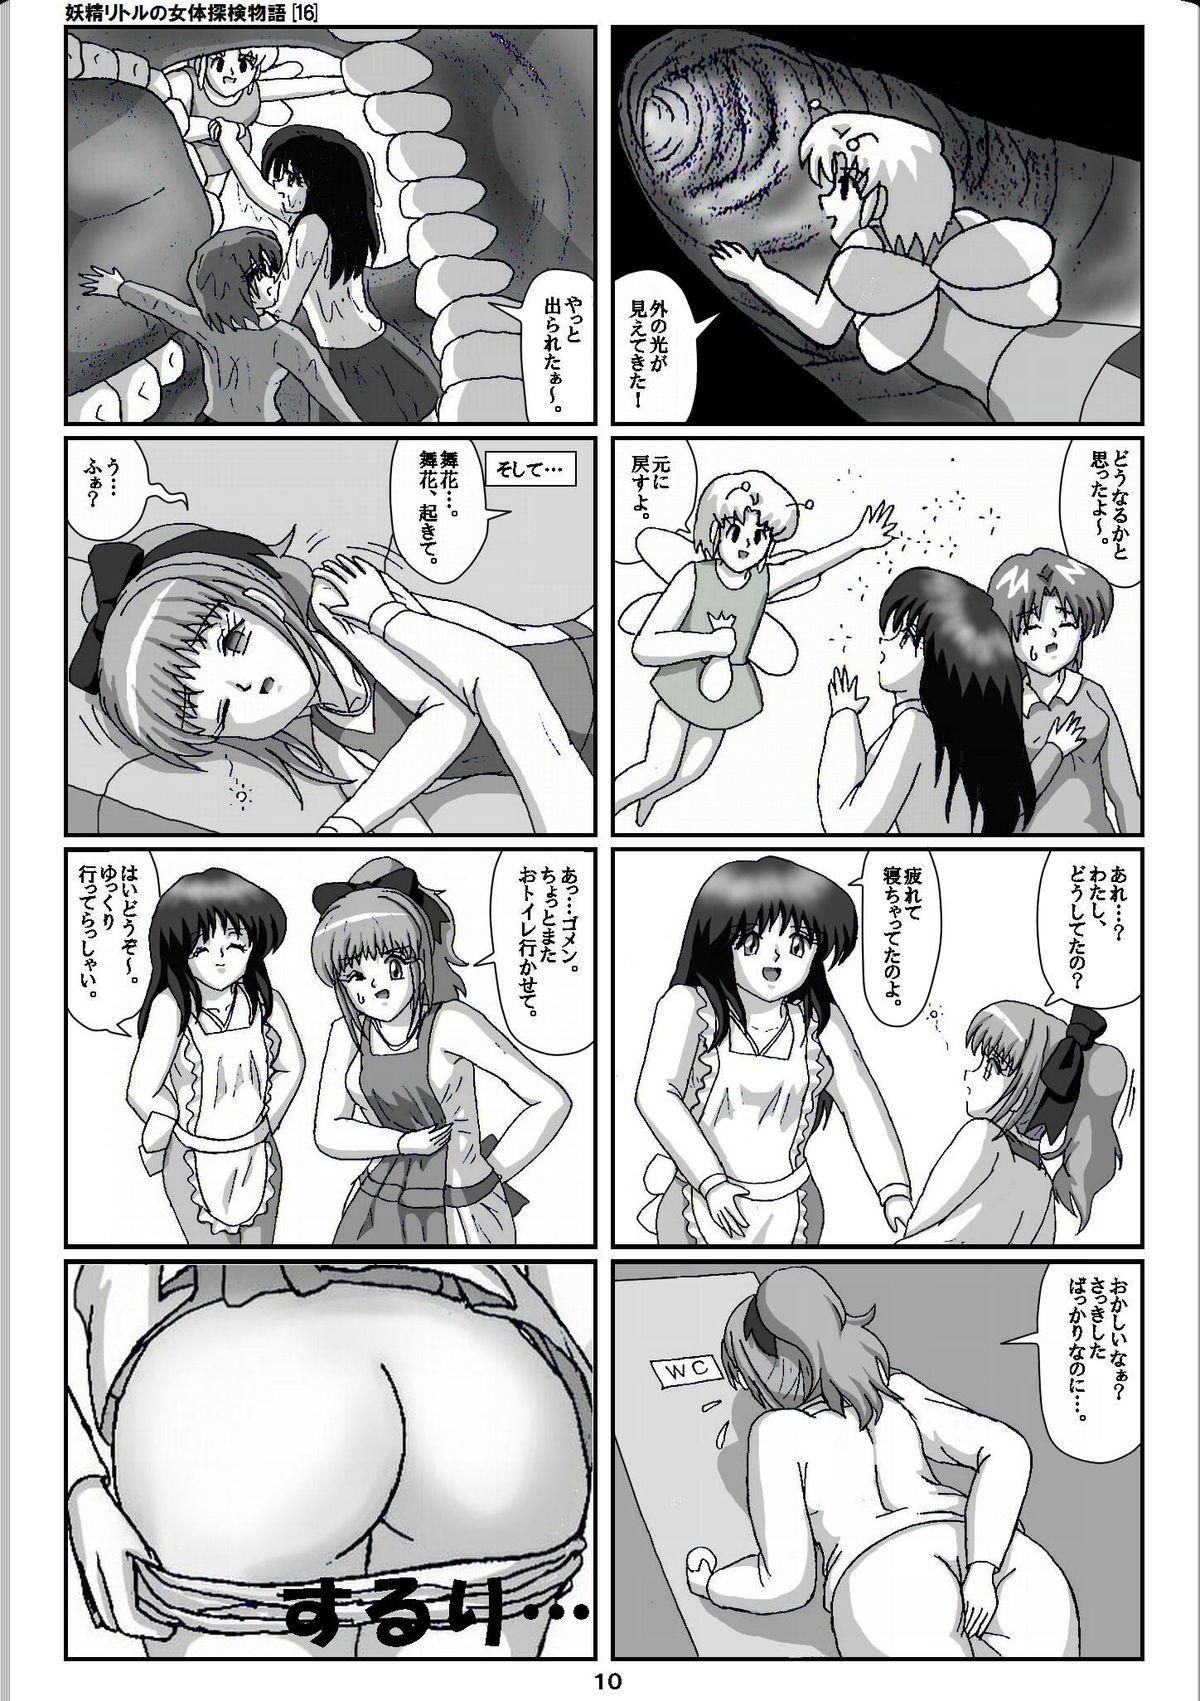 Vagina Yousei Little no Nyotai Tanken Monogatari Gets - Page 10